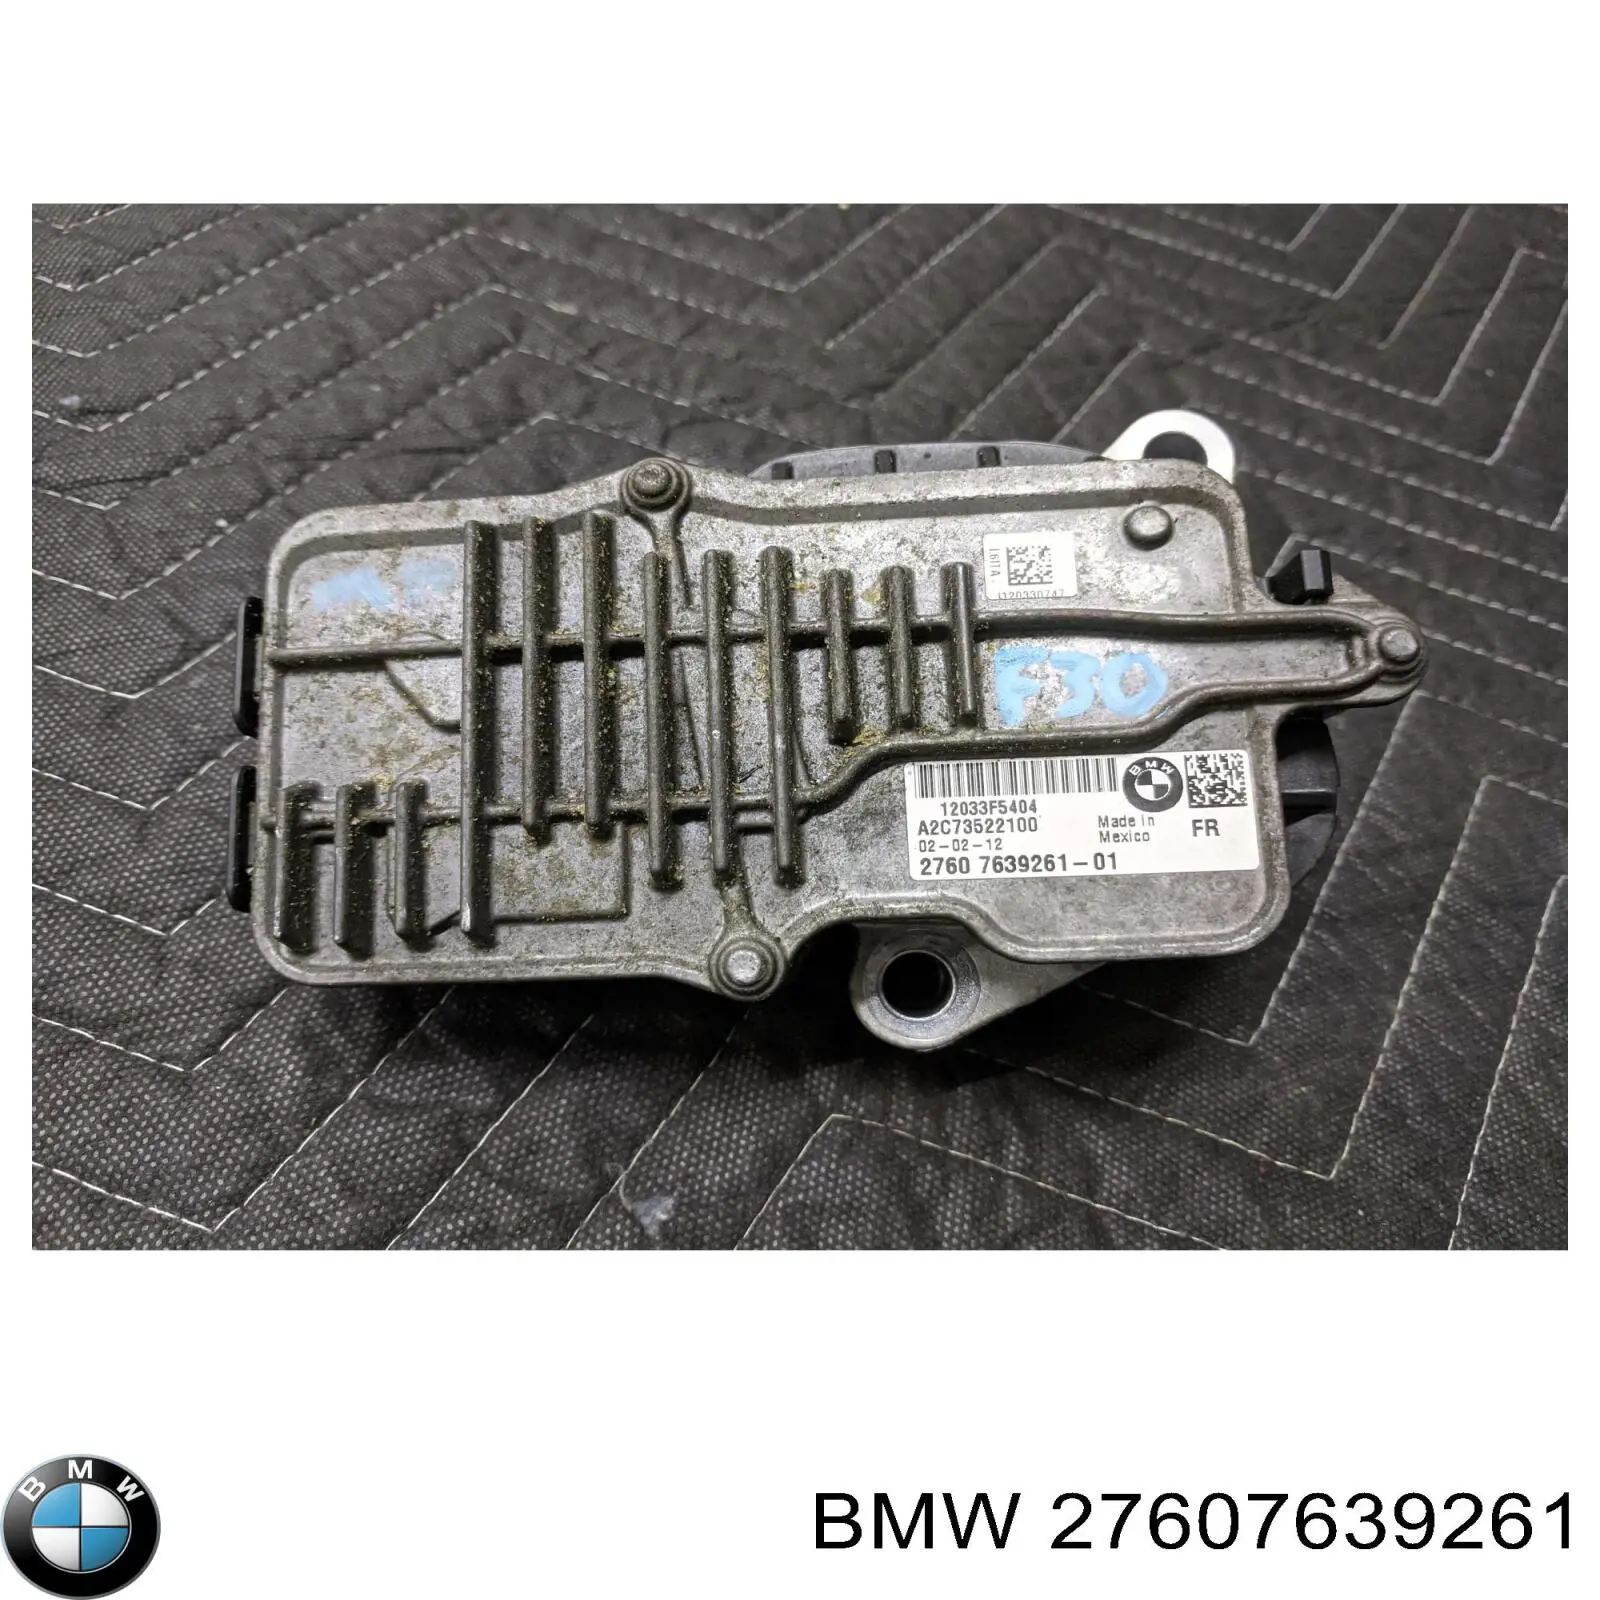 Модуль управления (ЭБУ) раздаточной коробкой BMW 27607639261